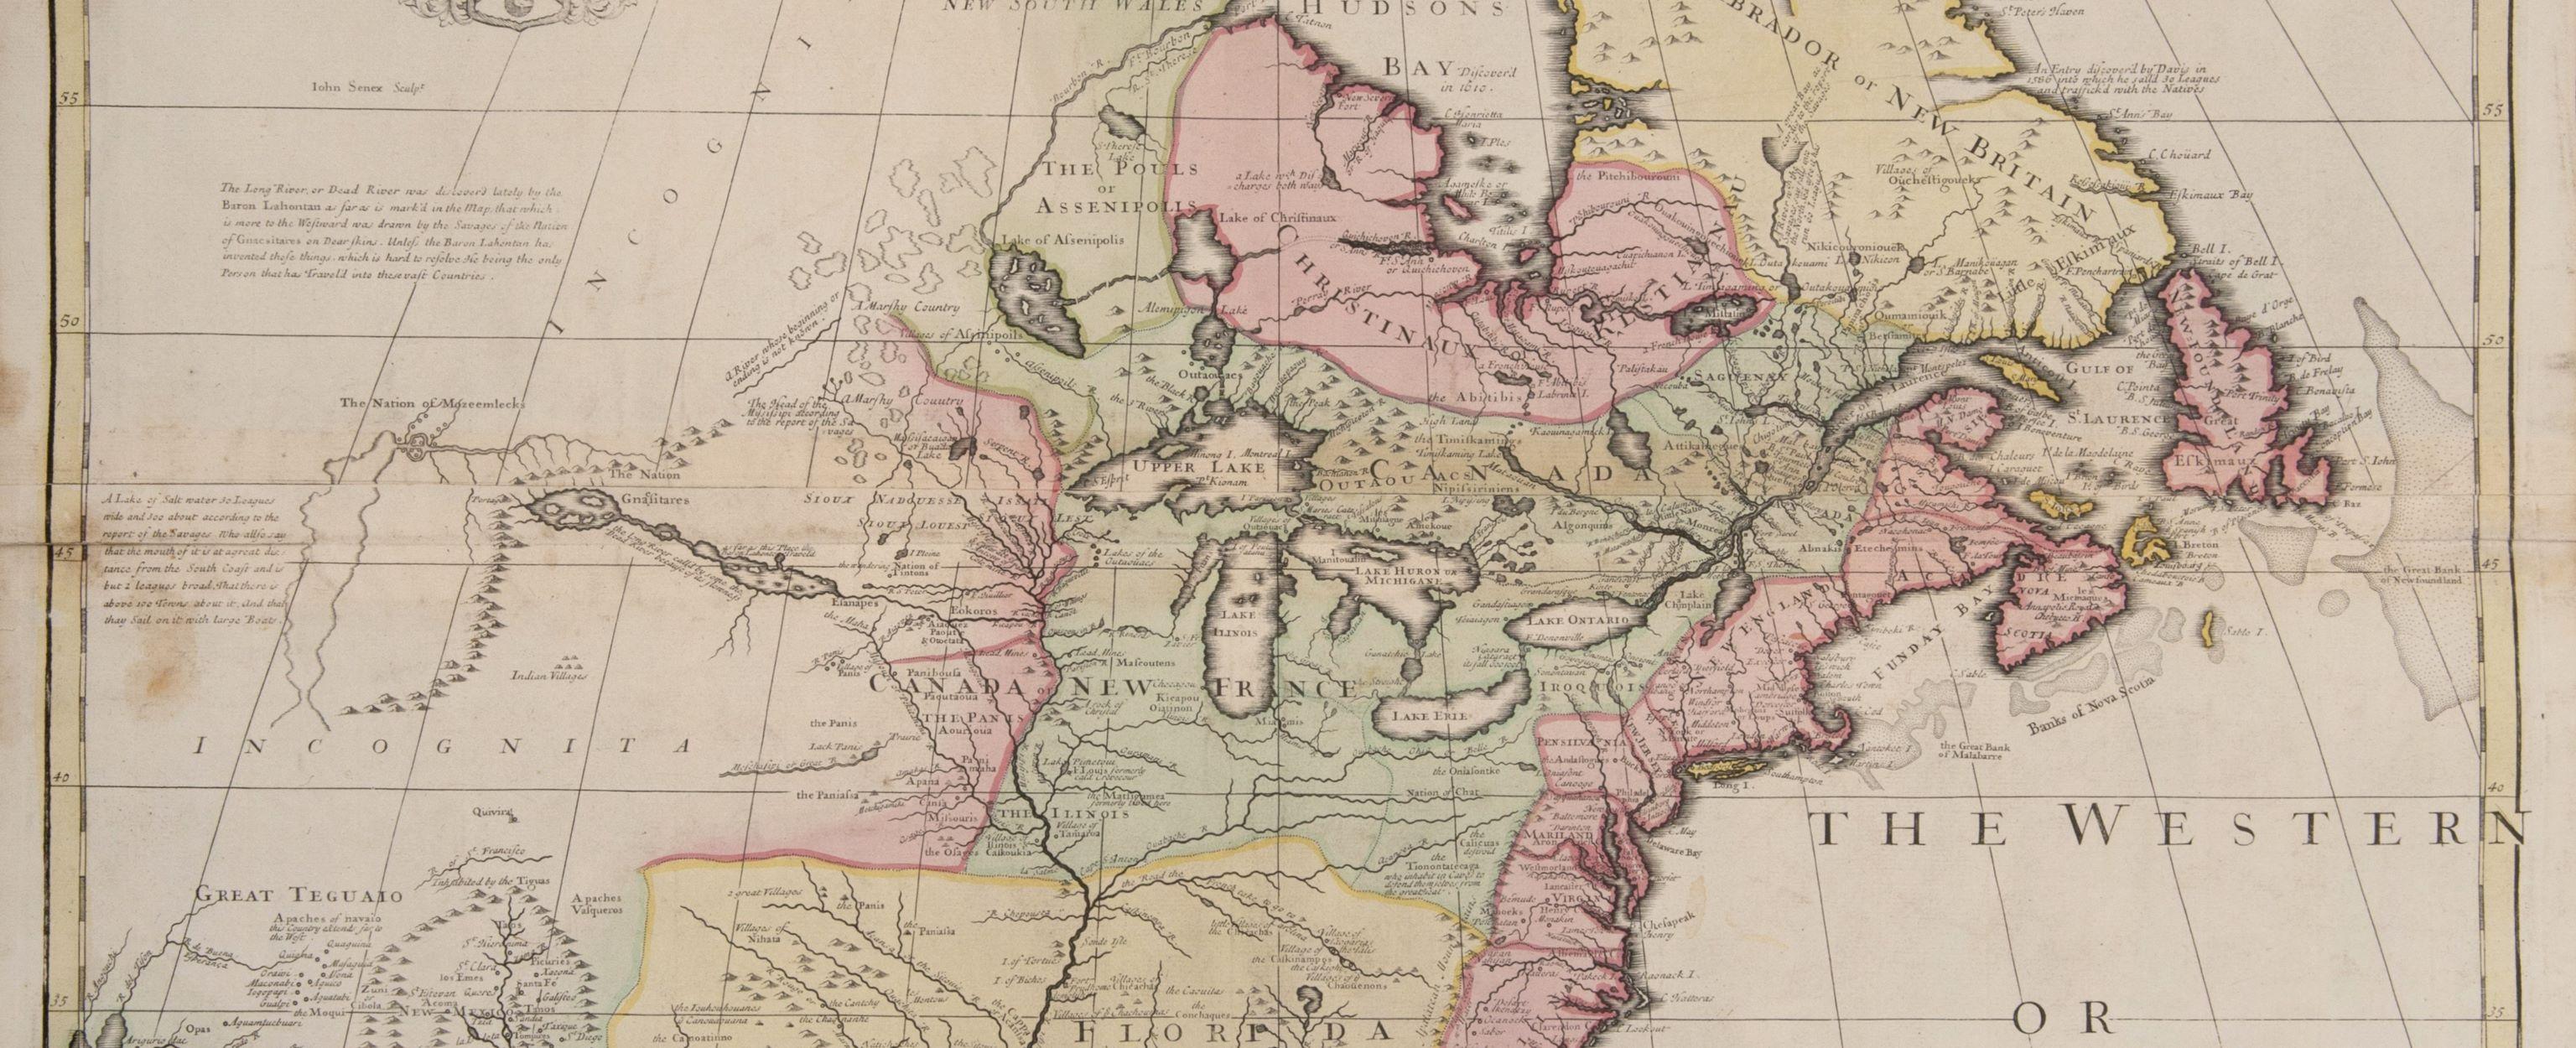 l'une des premières cartes anglaises à grande échelle de l'Amérique du Nord en vente 1